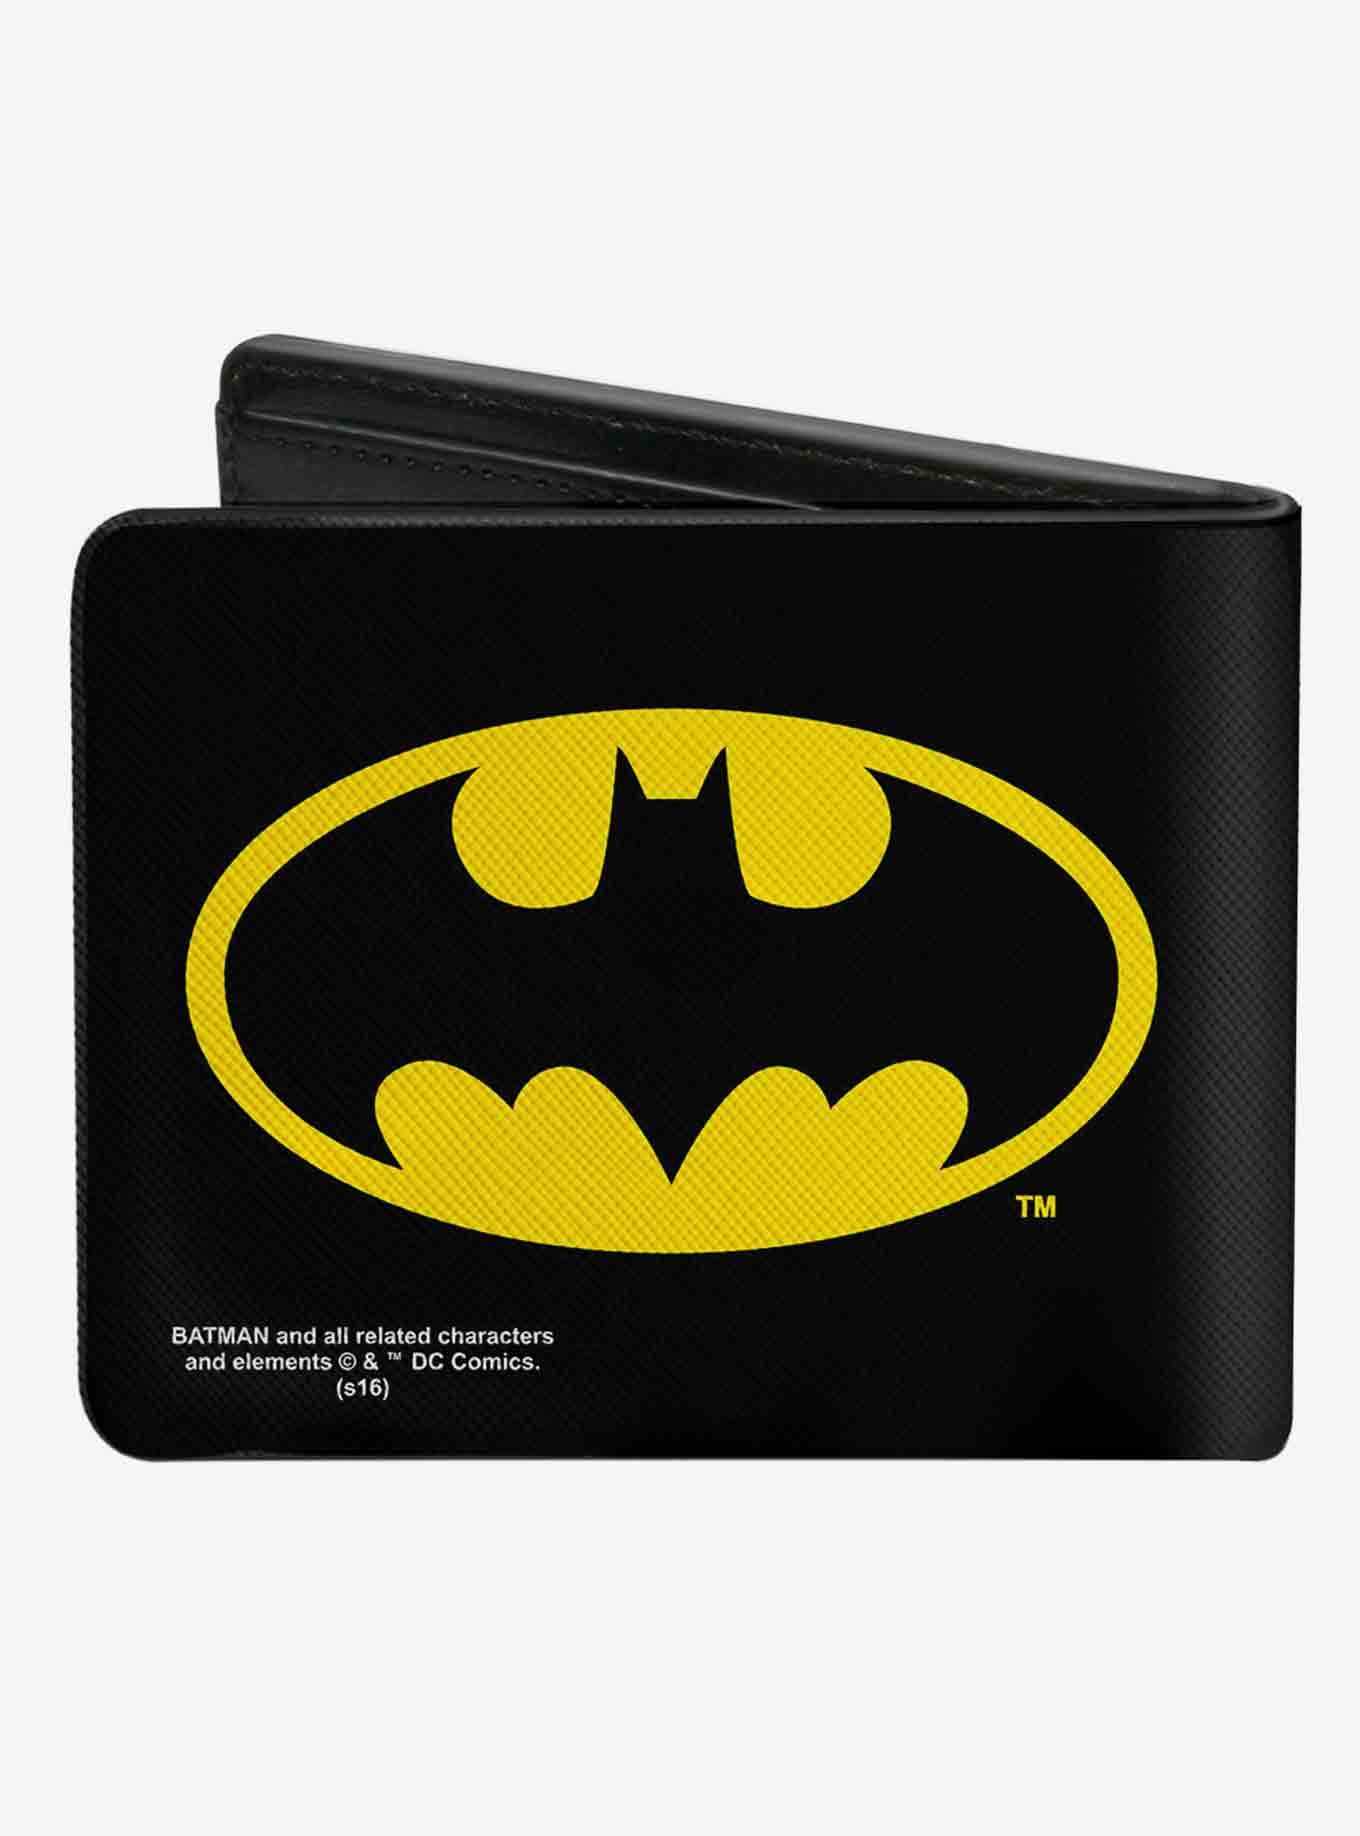 DC Comics Batman Bifold Wallet, , hi-res